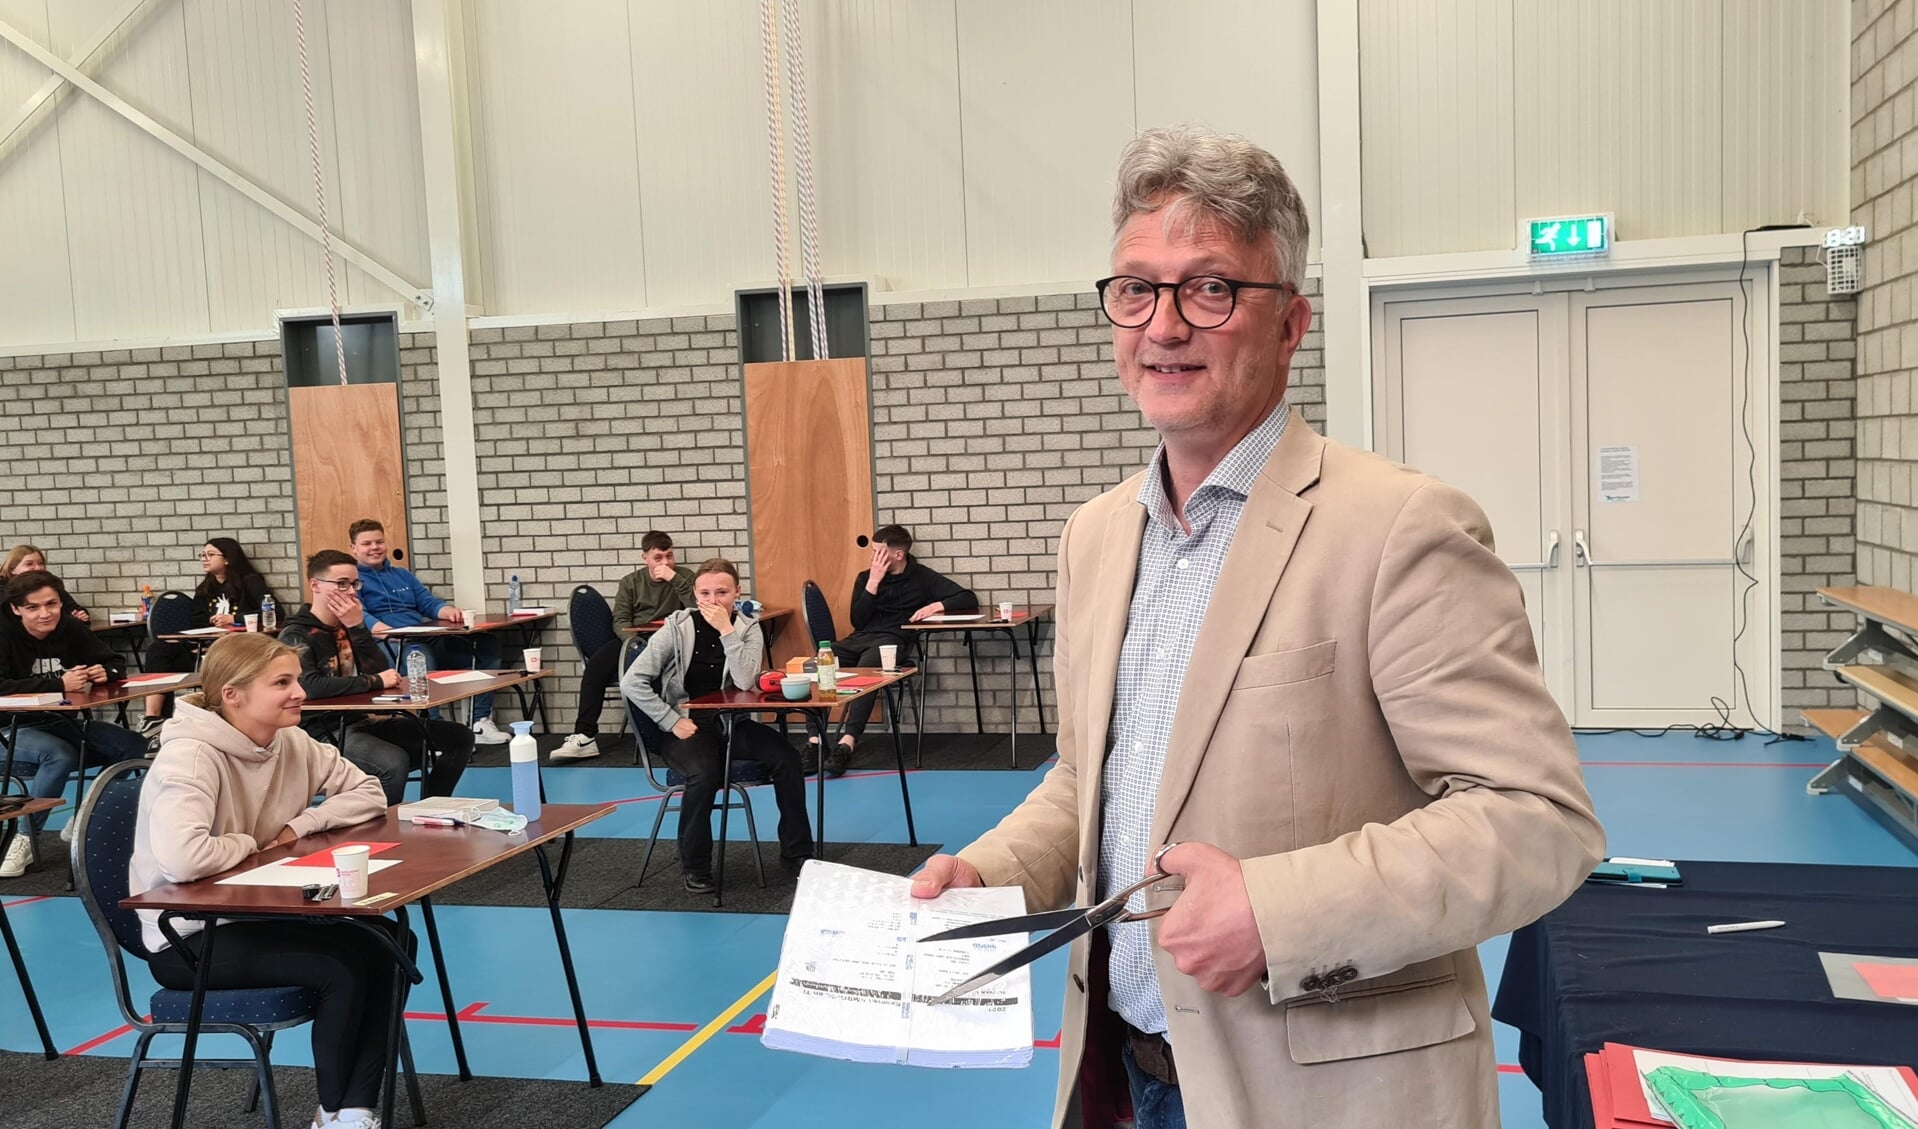 Directeur Wout Zilverberg opent de envelop met examenopgaven Nederlands mavo: de examens zijn begonnen.